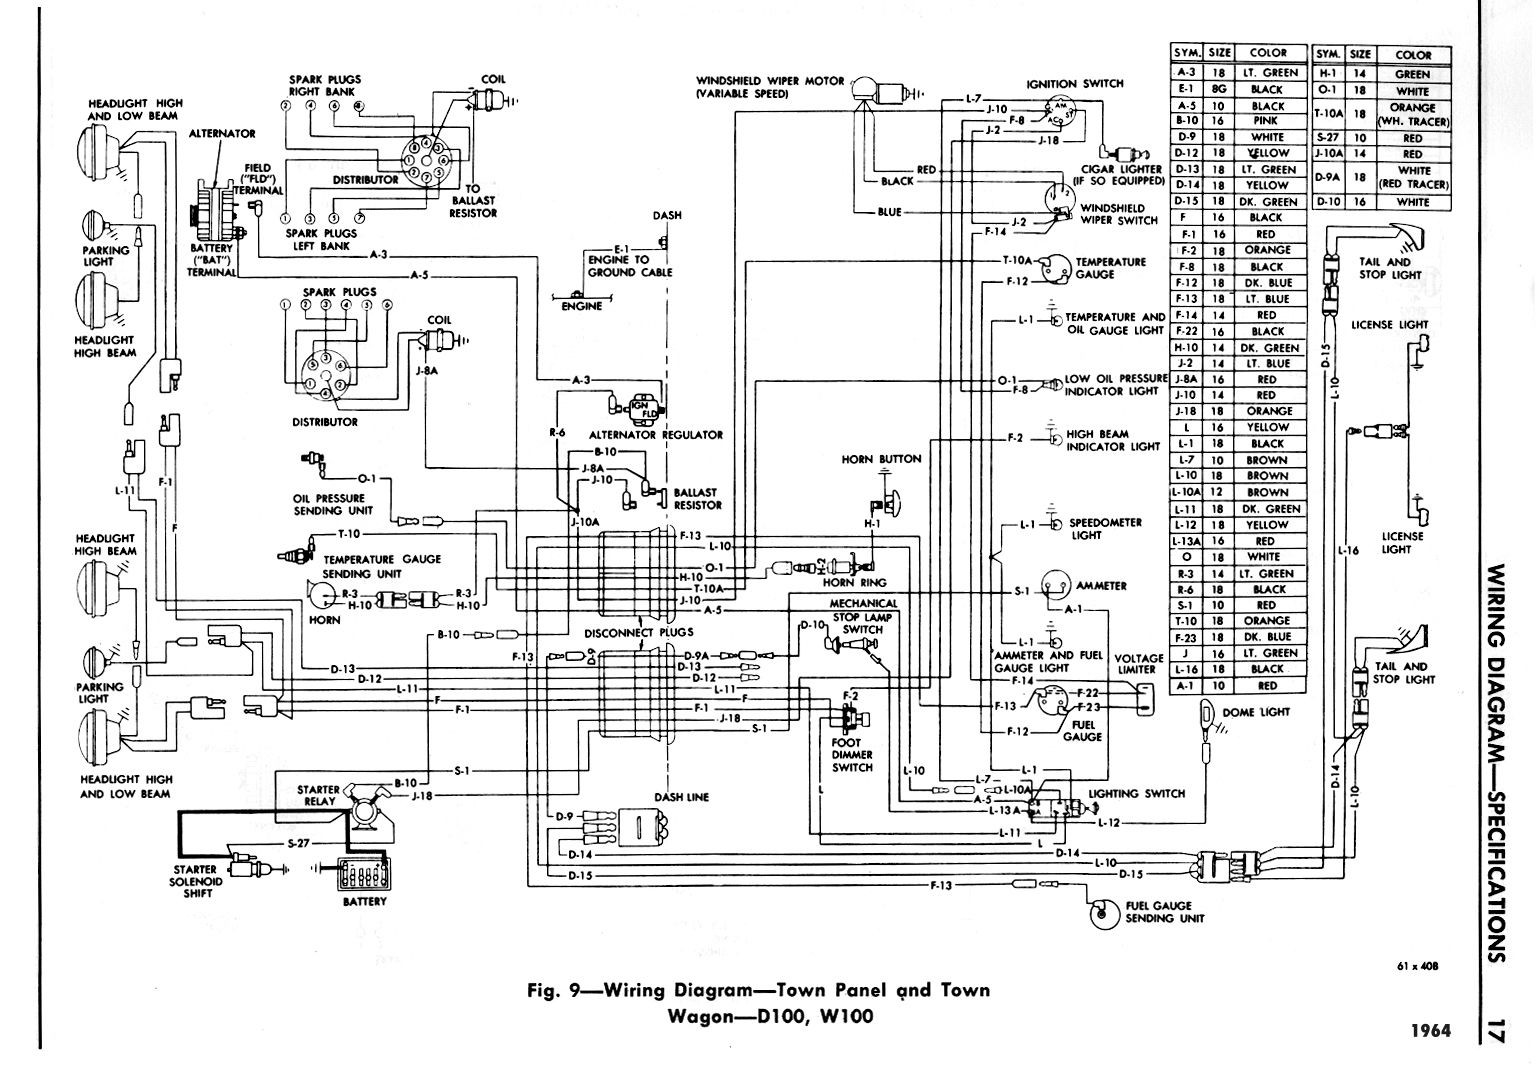 suzuki wagon wiring diagram wiring diagram details